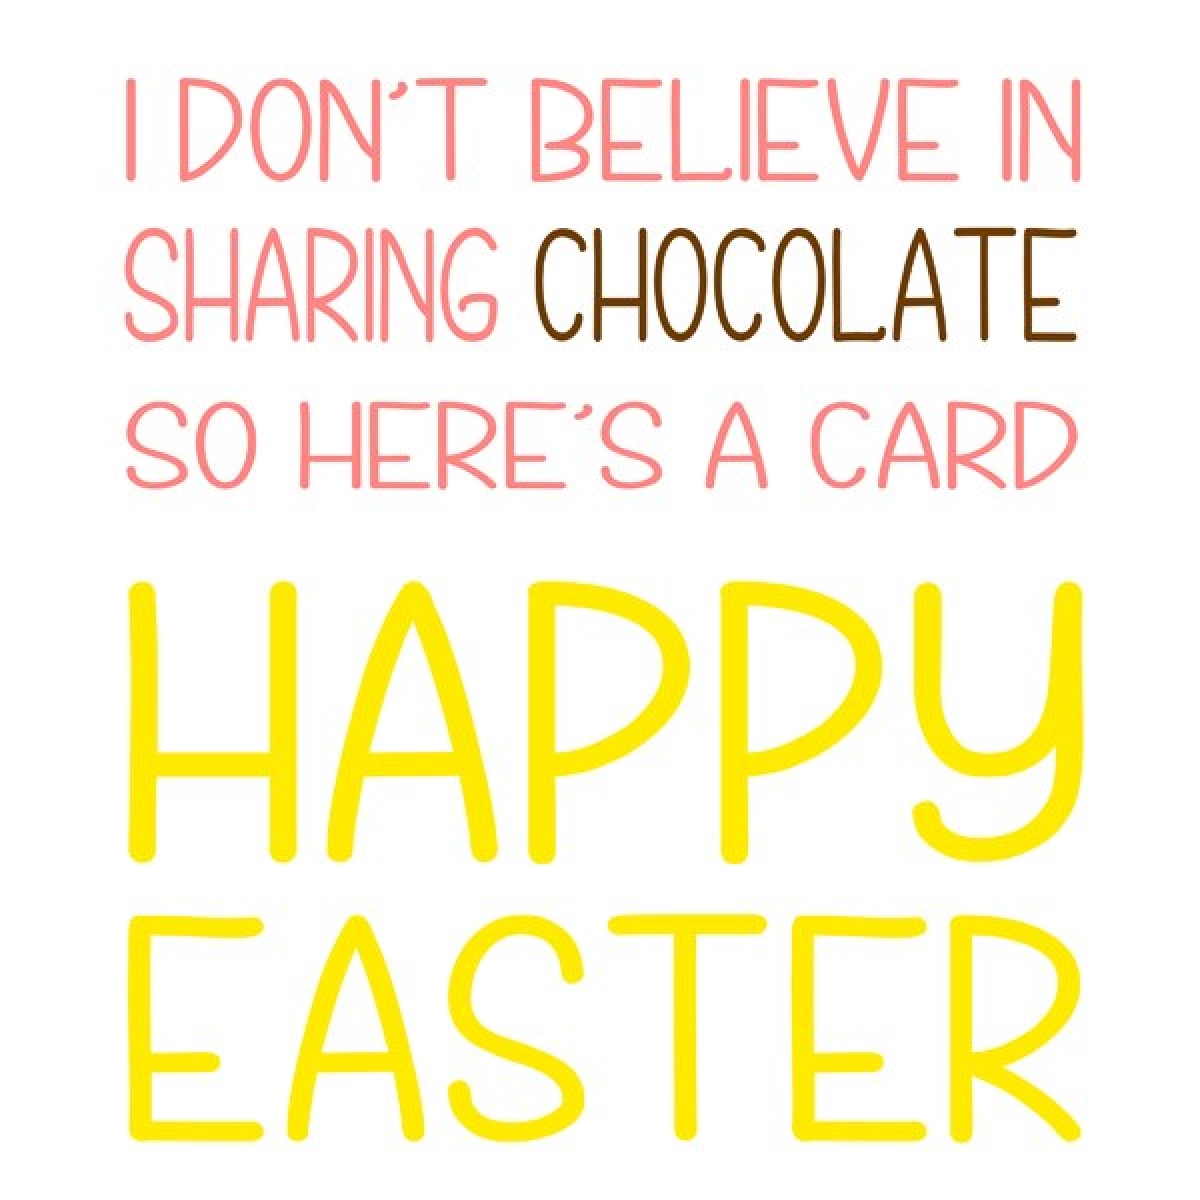 Send Easter E-Cards eCards